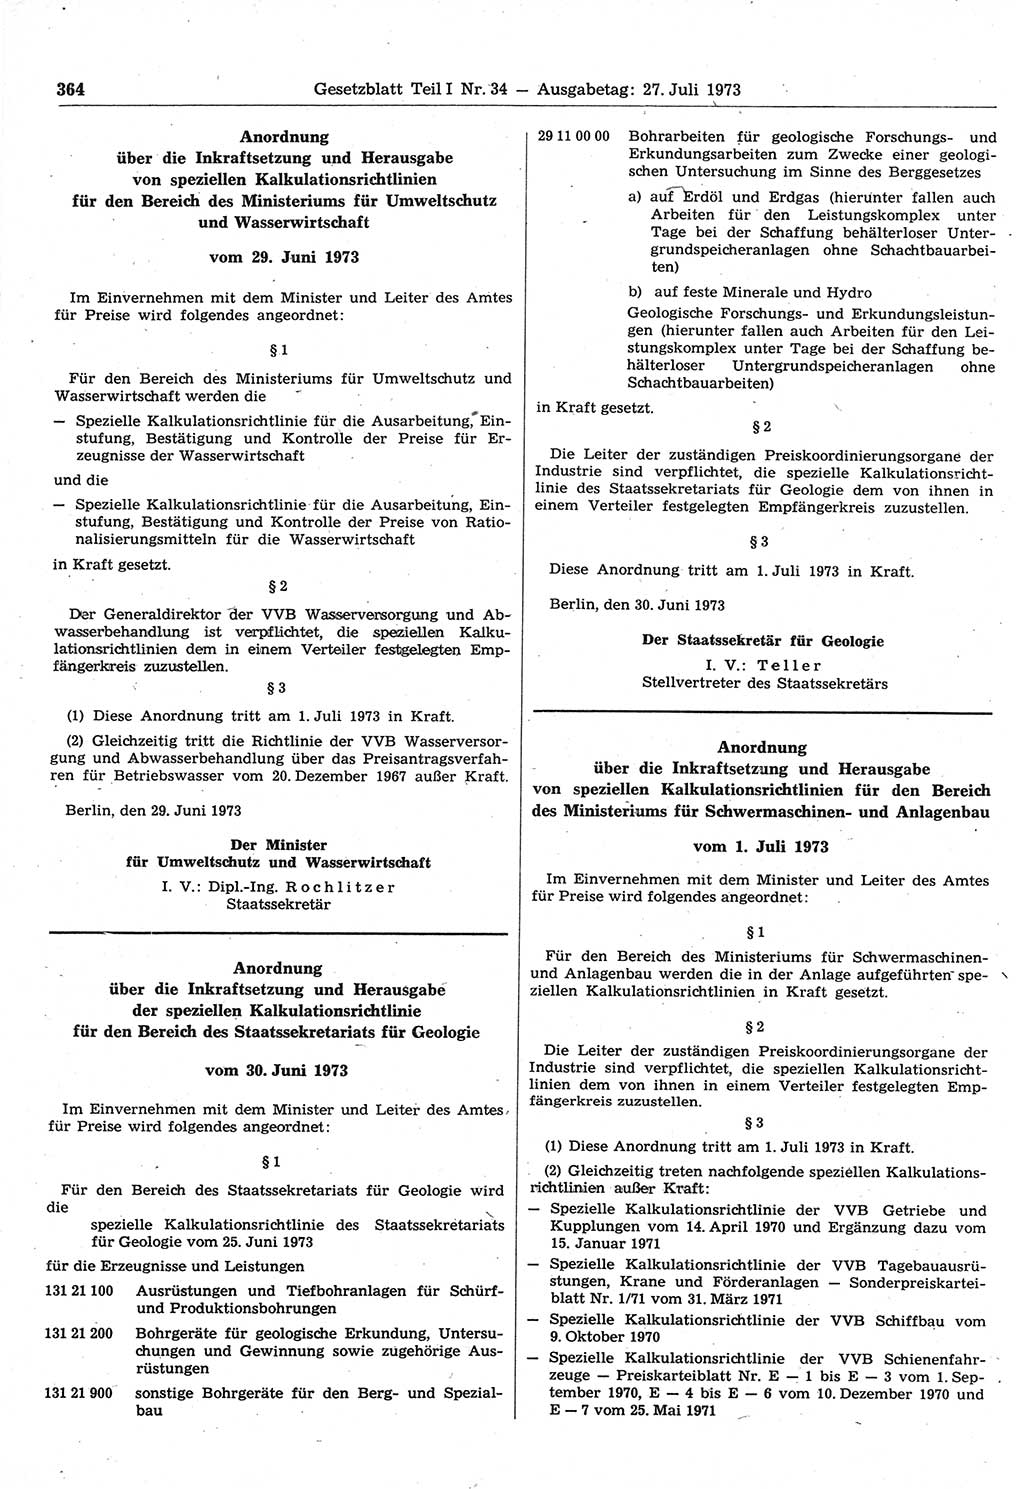 Gesetzblatt (GBl.) der Deutschen Demokratischen Republik (DDR) Teil Ⅰ 1973, Seite 364 (GBl. DDR Ⅰ 1973, S. 364)